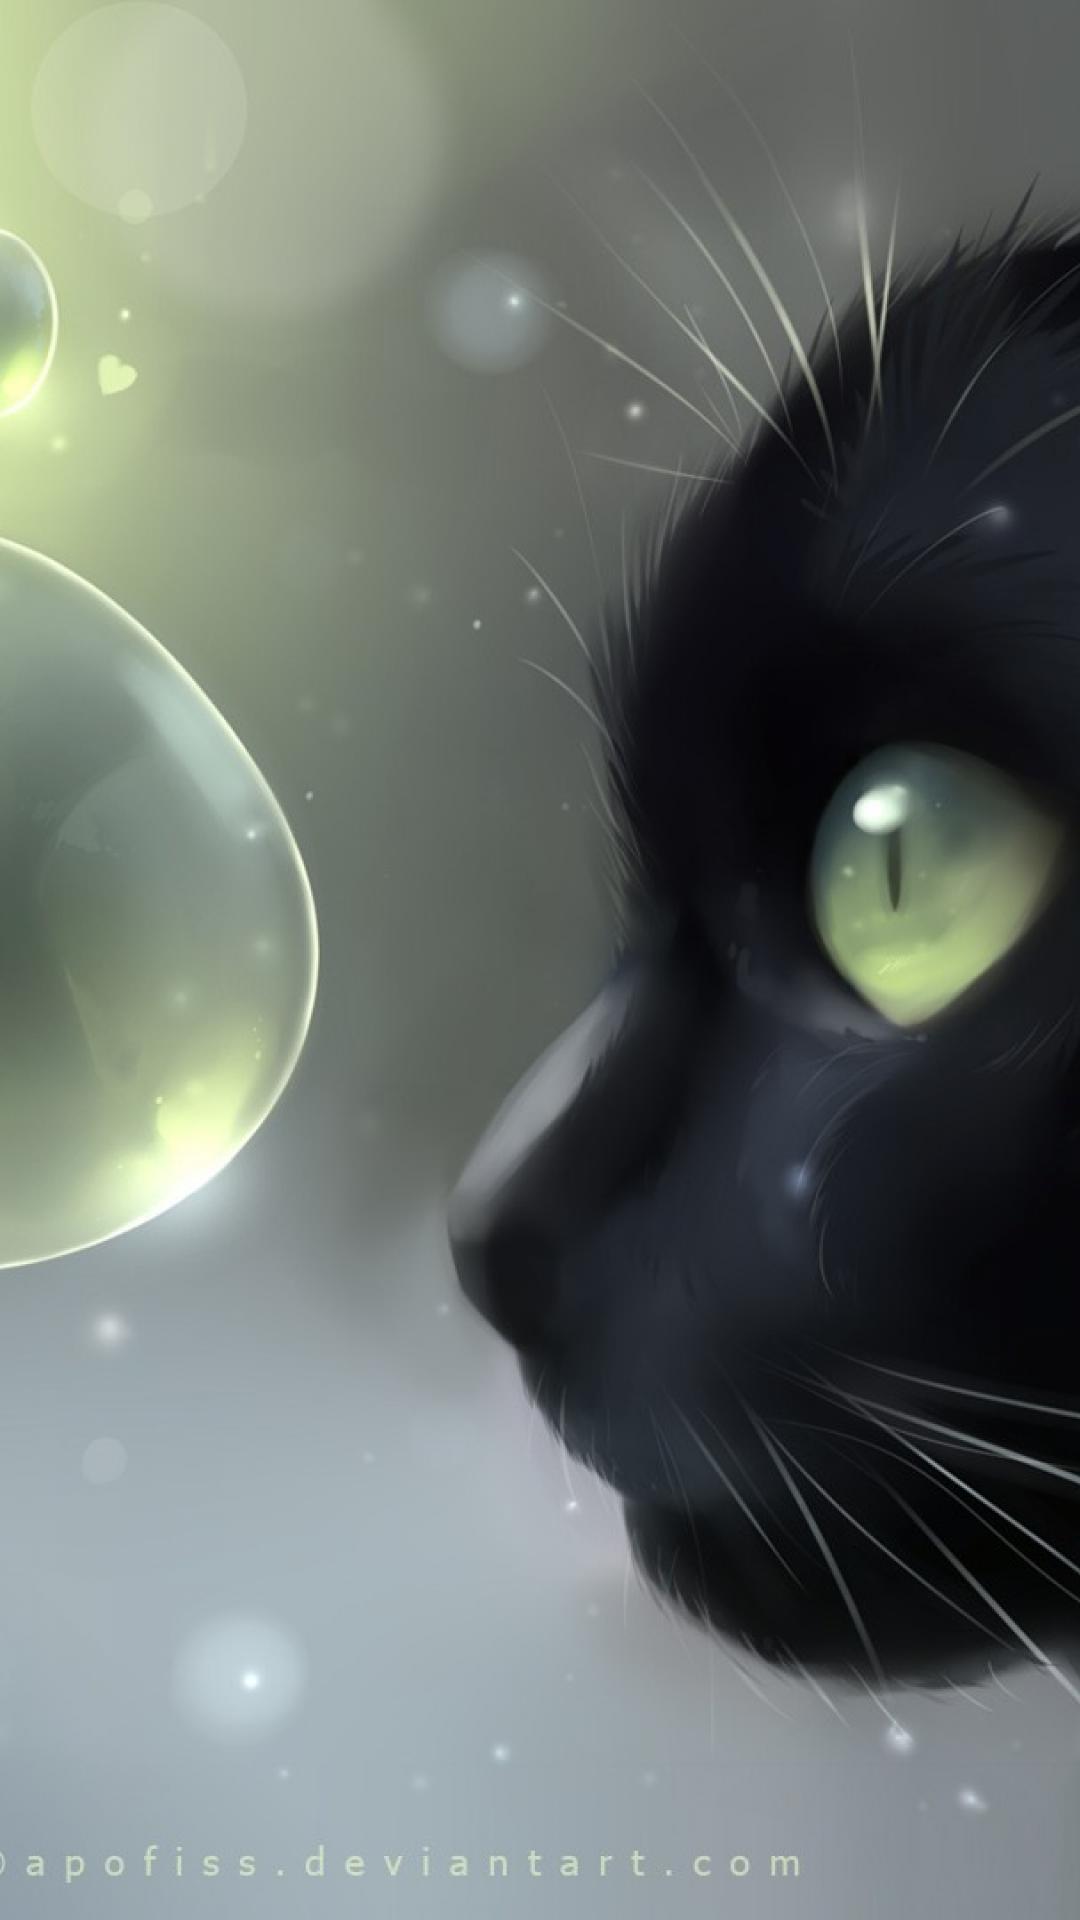 Черный котик арт